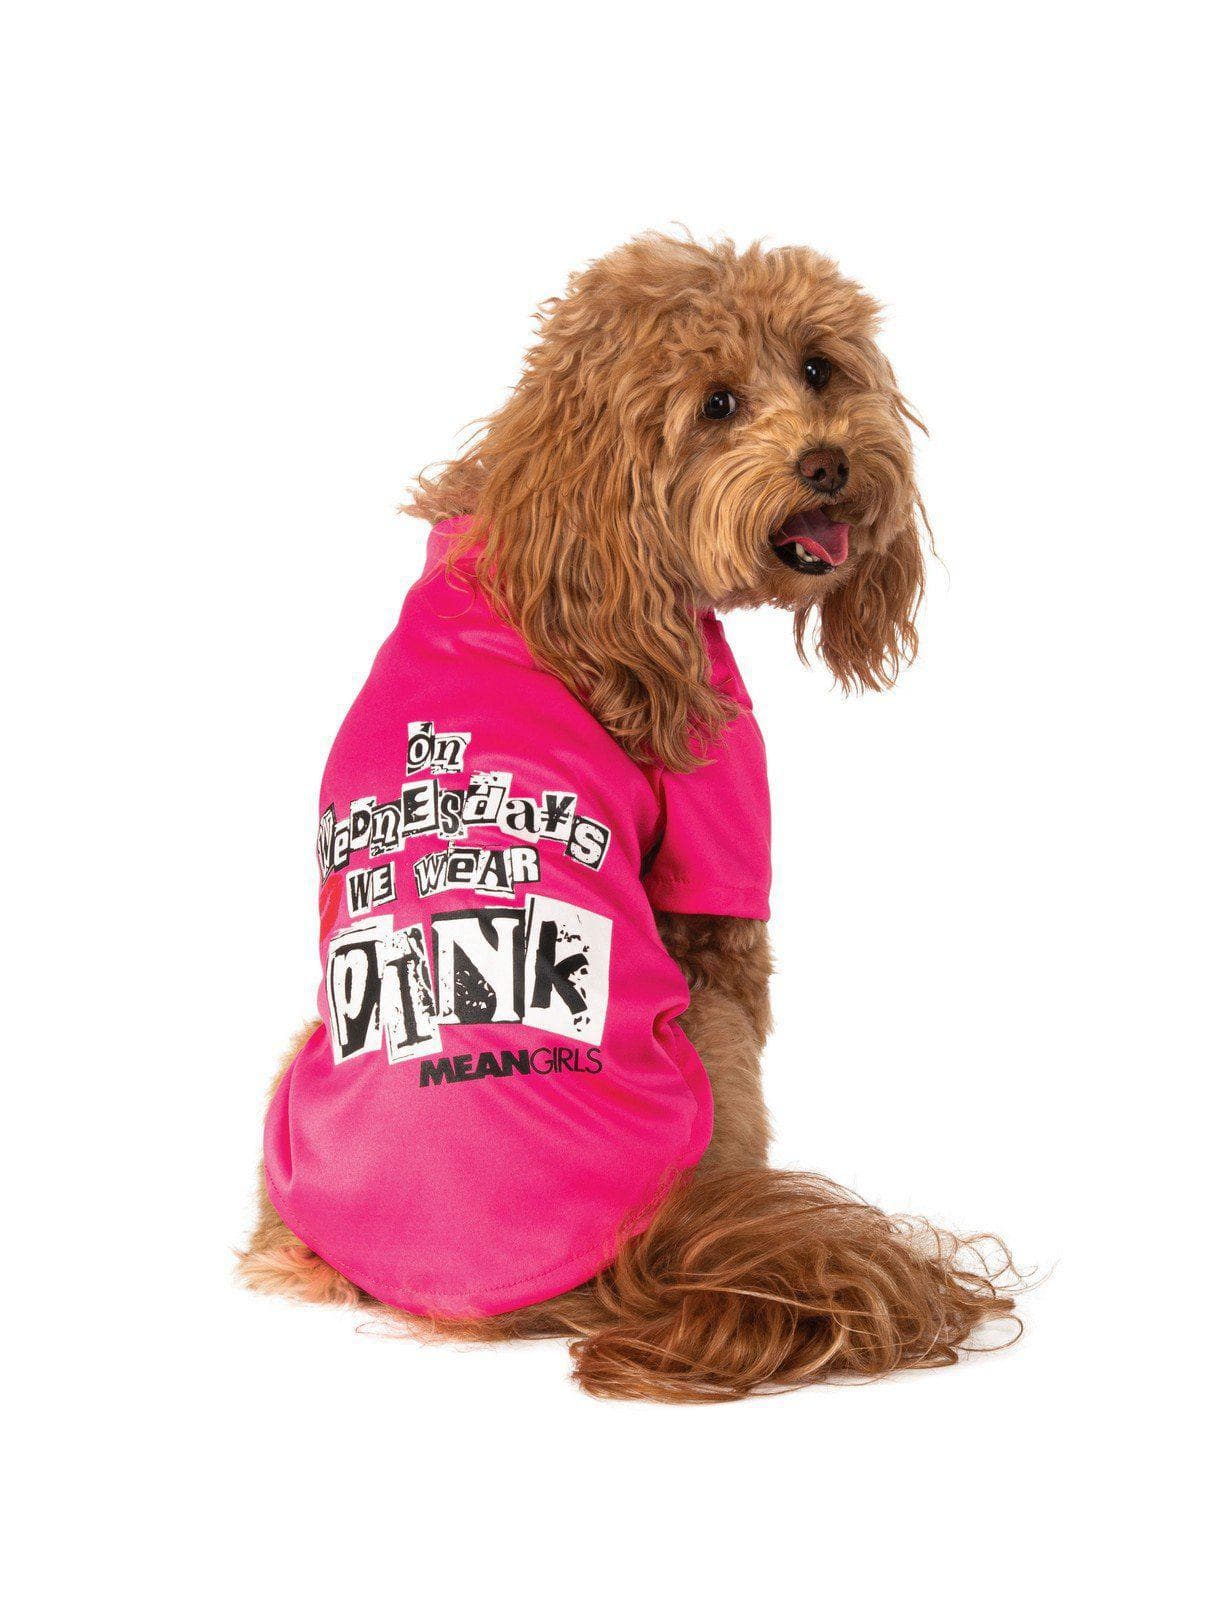 Mean Girls Pet T-Shirt - Wednesdays We Wear Pink - costumes.com